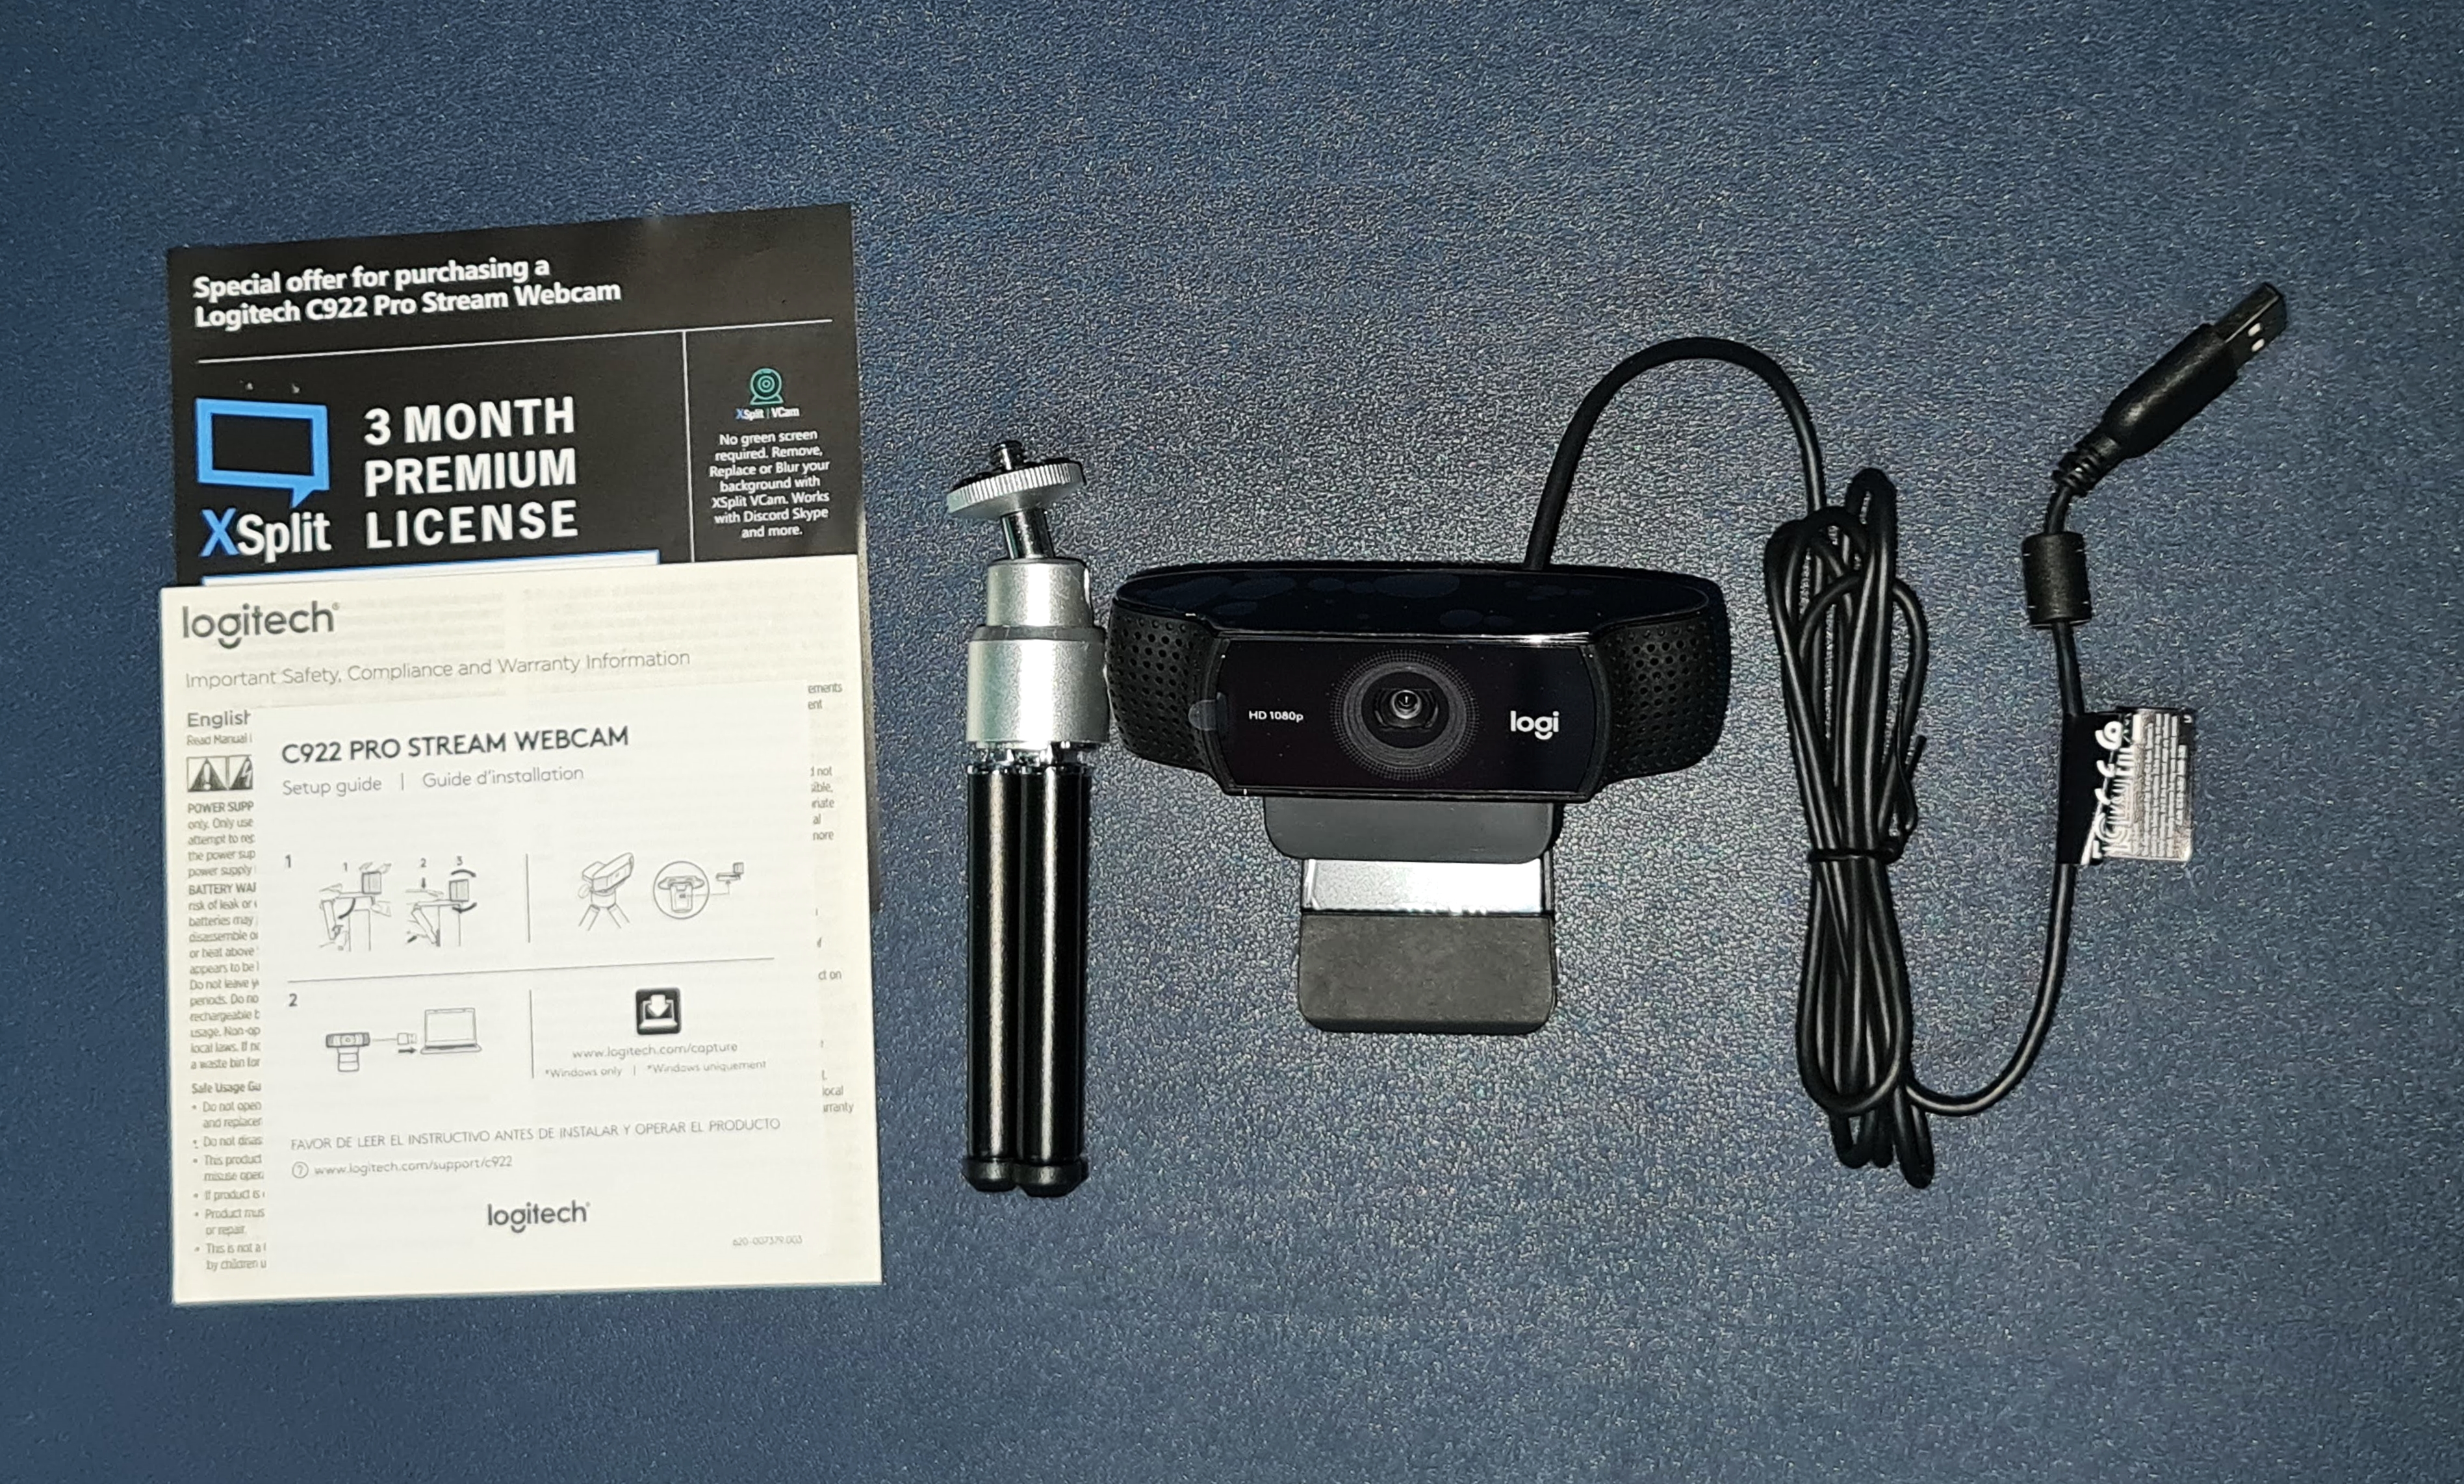 Nếu bạn đang tìm kiếm một chiếc webcam chất lượng cao để nâng cao trải nghiệm video của mình, đừng bỏ qua đánh giá chi tiết về Logitech C922 Pro. Chiếc webcam này sở hữu nhiều tính năng tuyệt vời và chất lượng hình ảnh và âm thanh đều rất tốt. Hãy cùng xem chi tiết hơn trong hình ảnh liên quan!